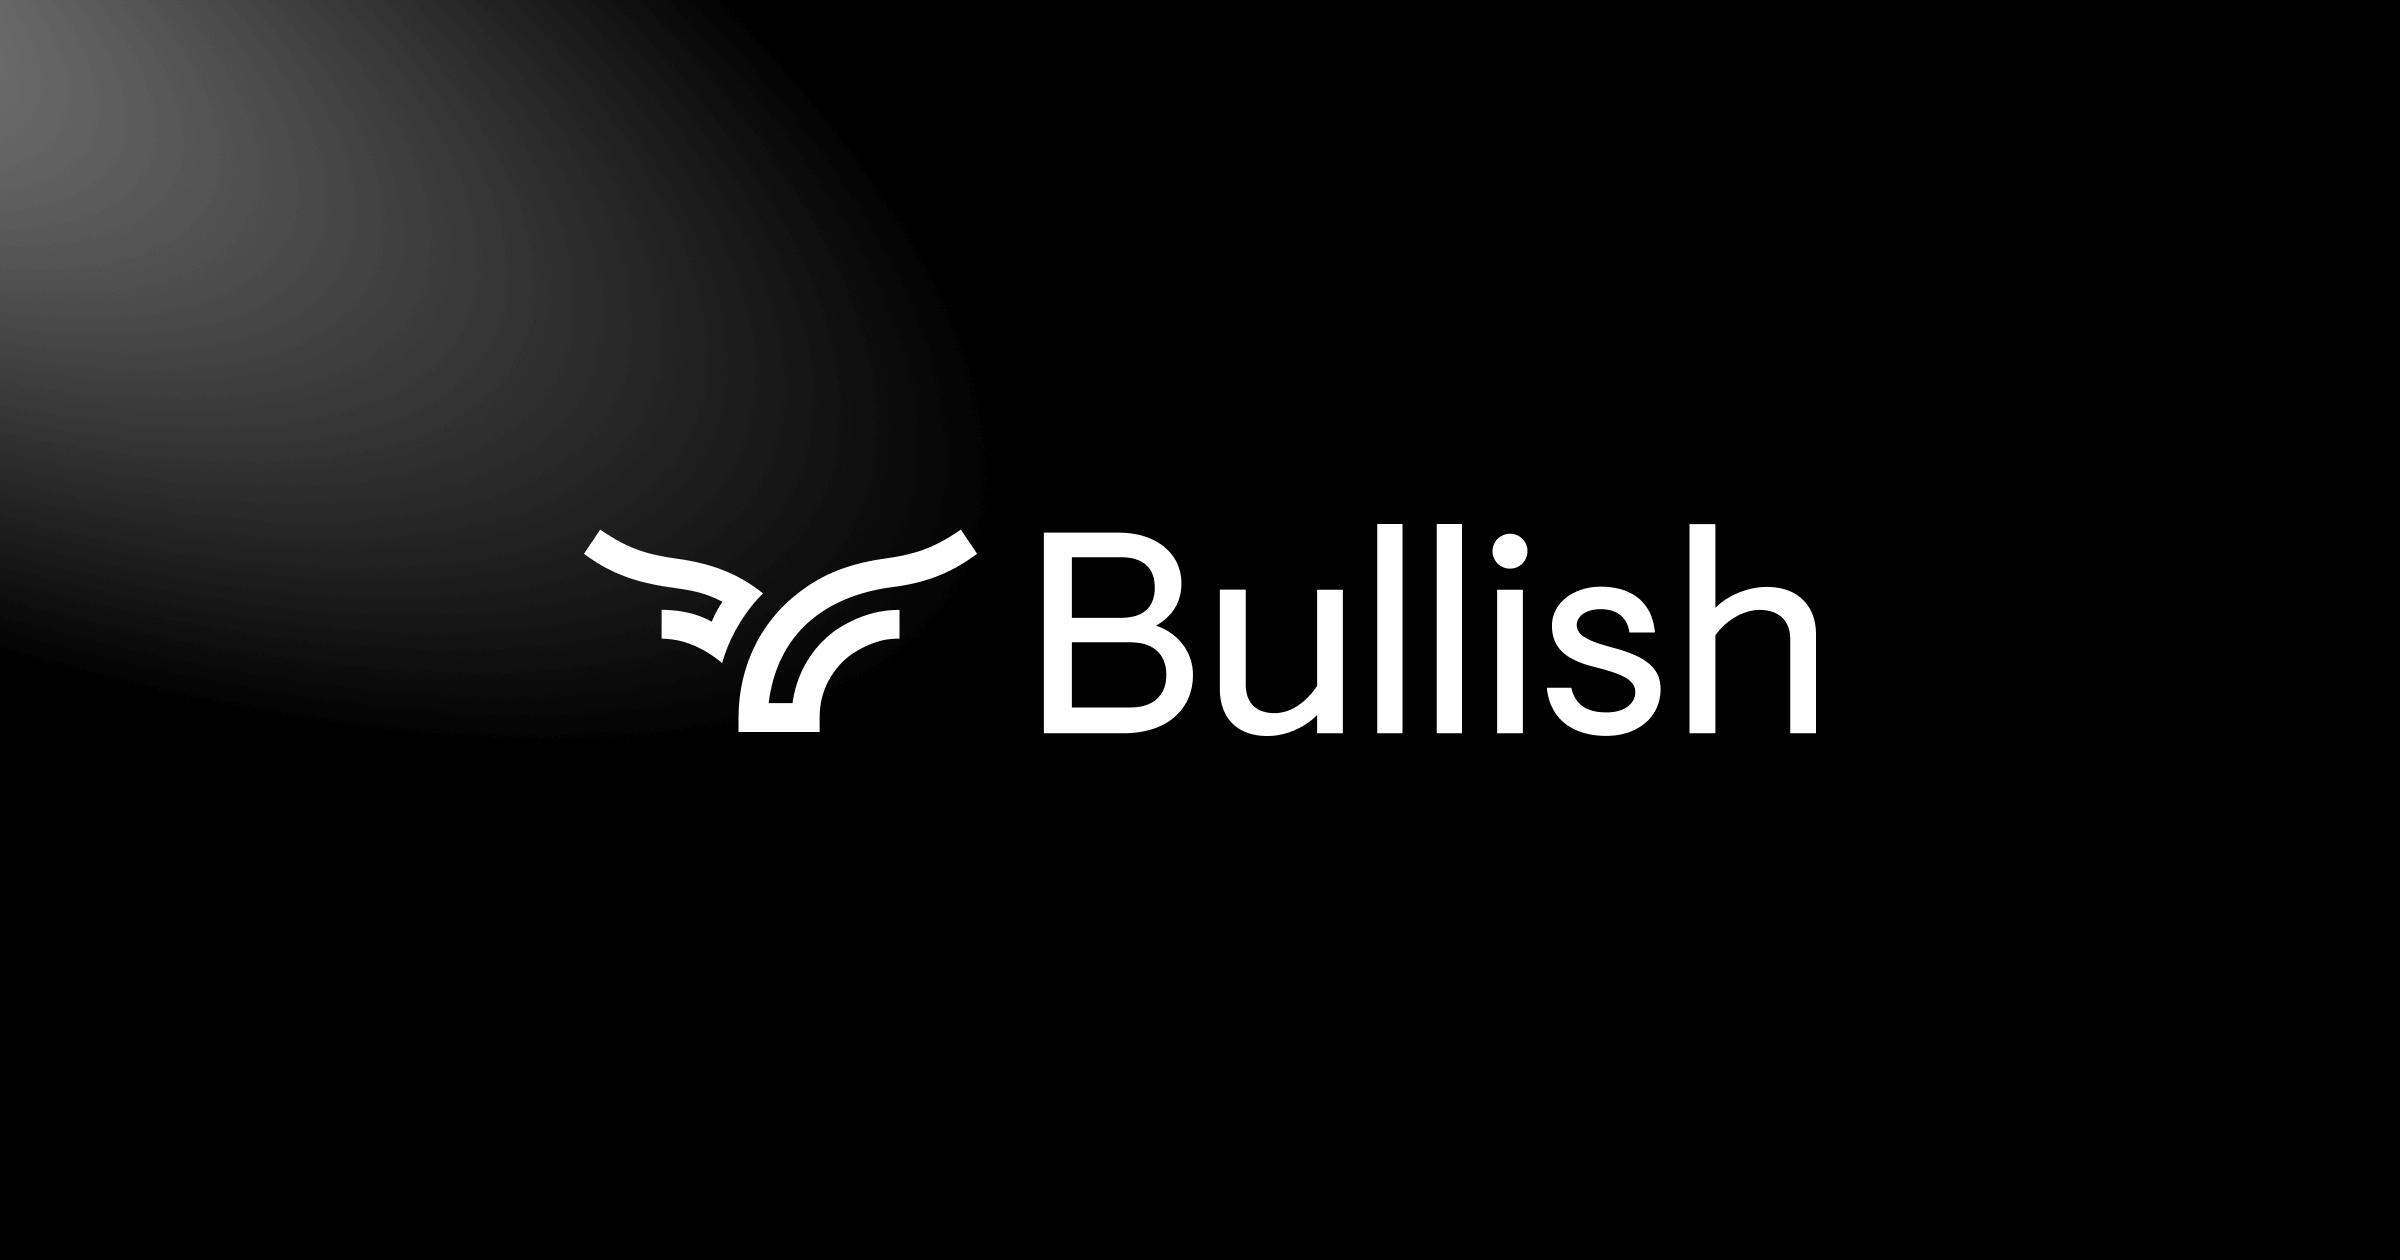 Sàn giao dịch Bullish.com cắt giảm 10% lực lượng lao động